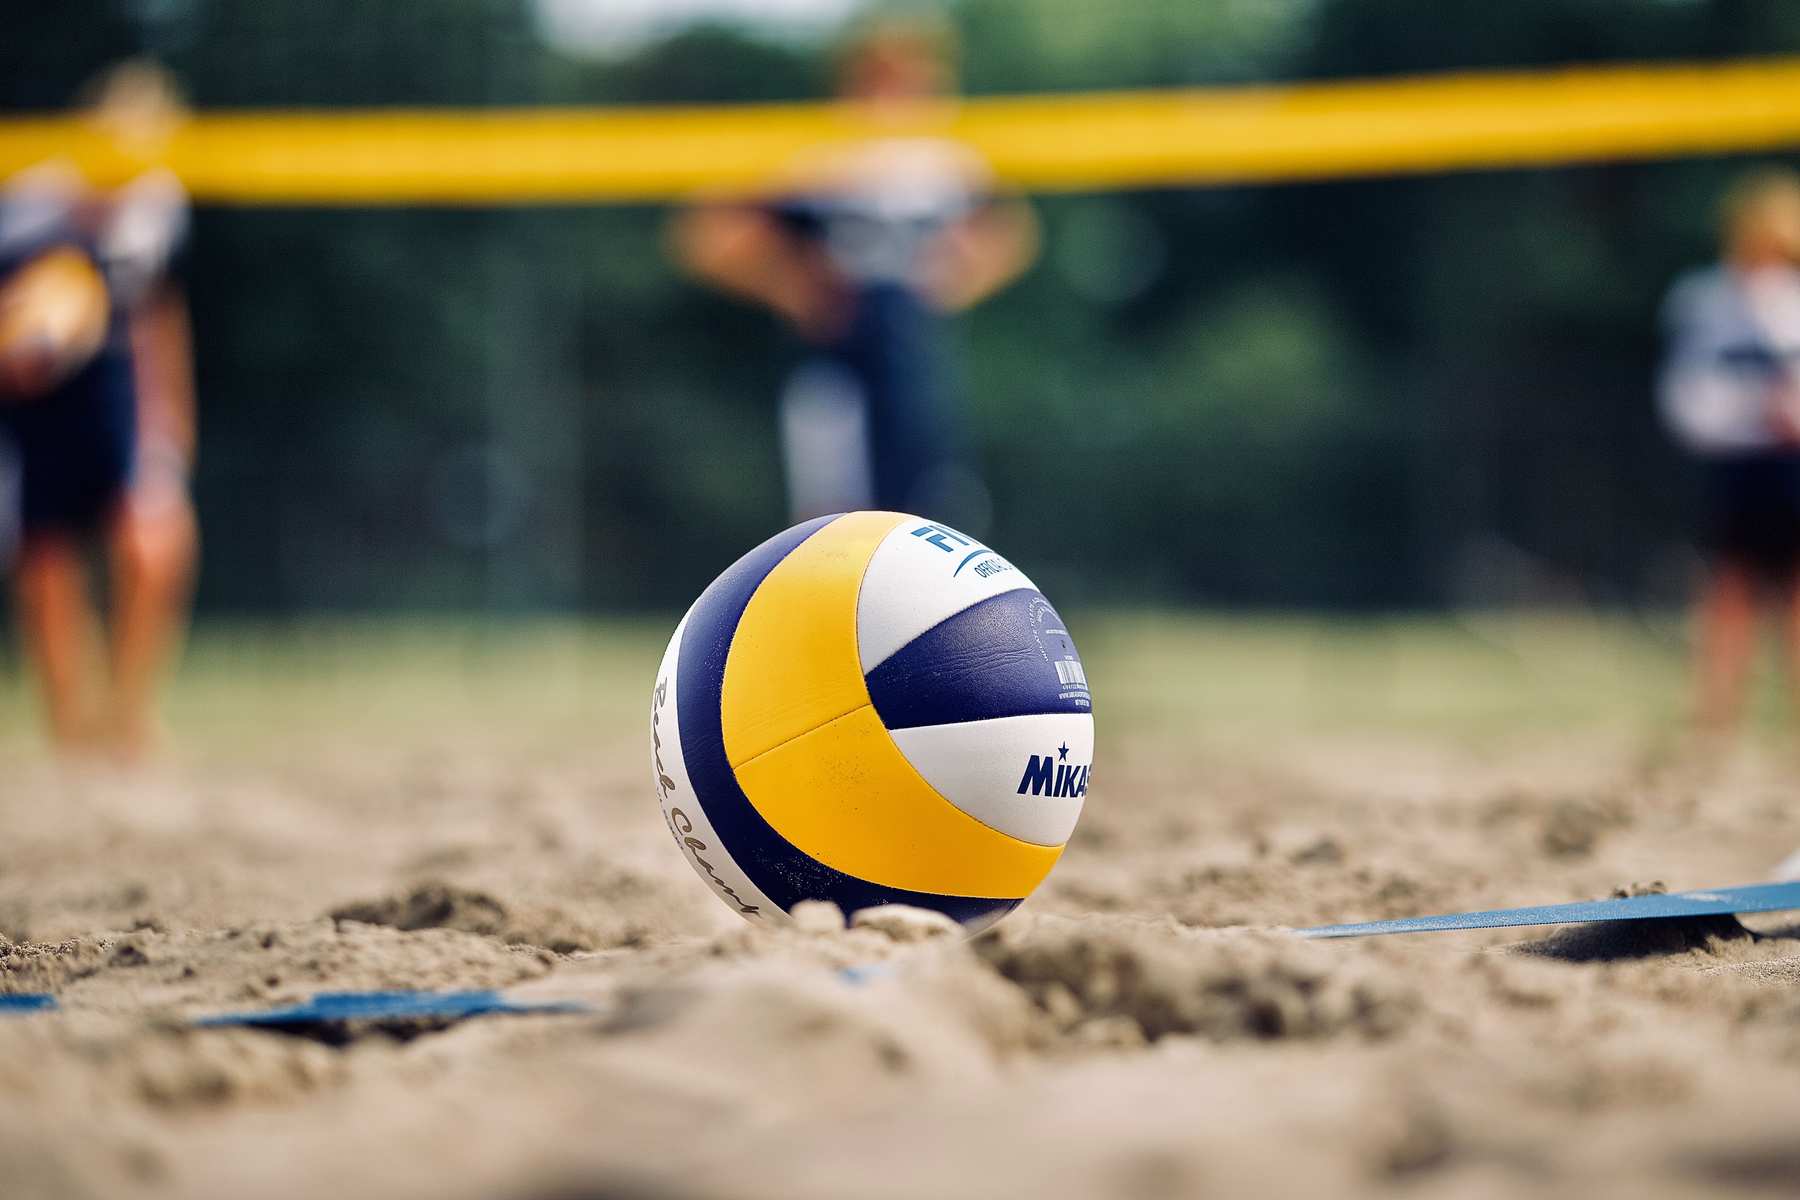 Volleyball - genau Dein Ding